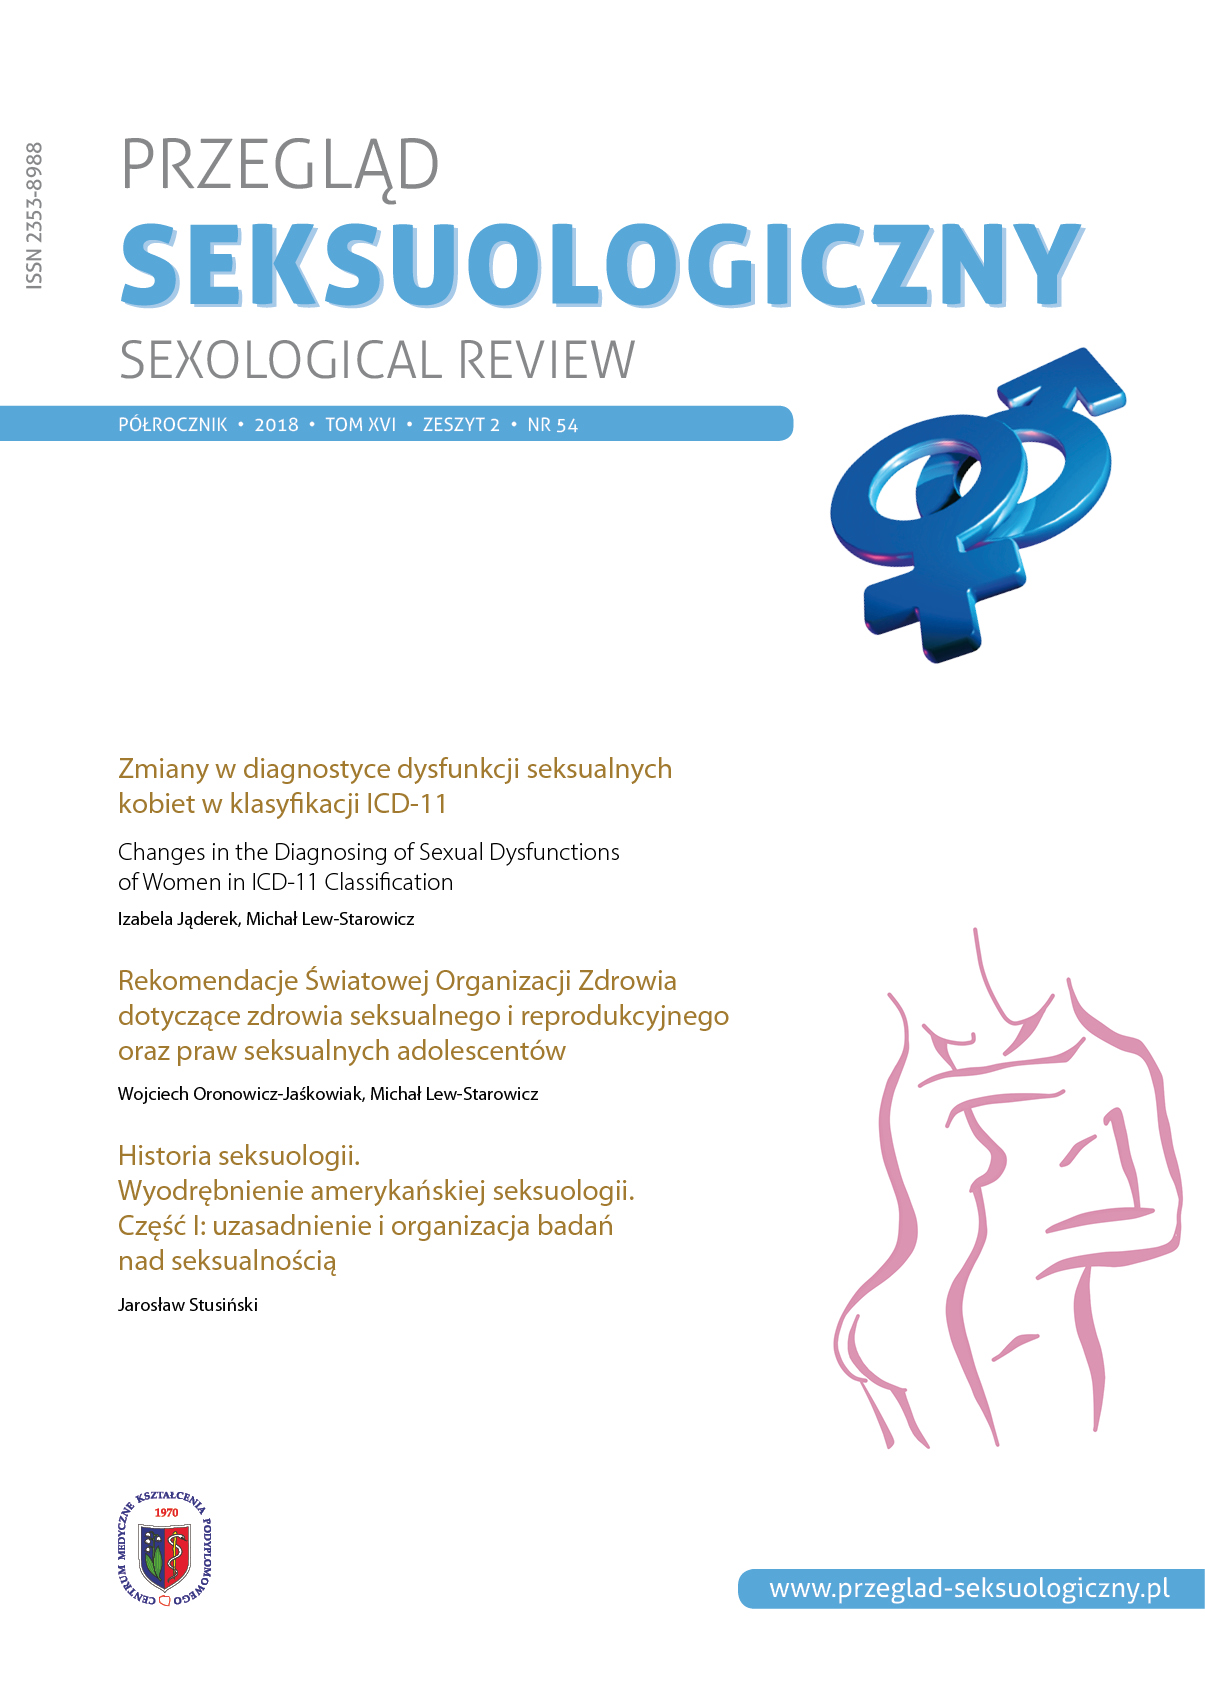 Zmiany w diagnostyce dysfunkcji seksualnych kobiet w klasyfikacji ICD-11